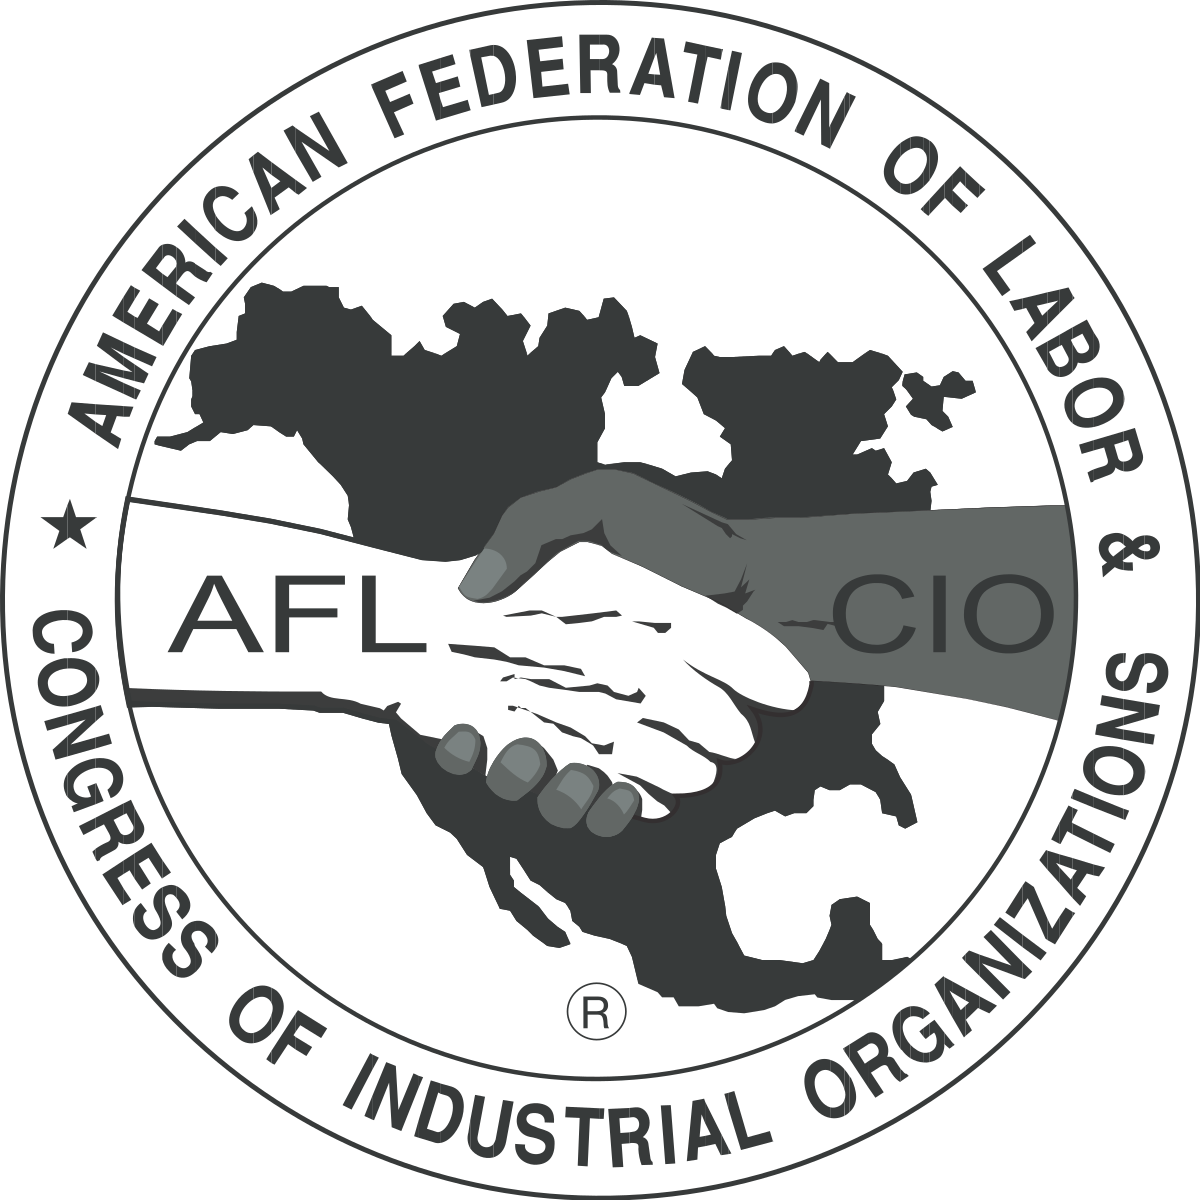 AFL-CIO Conference